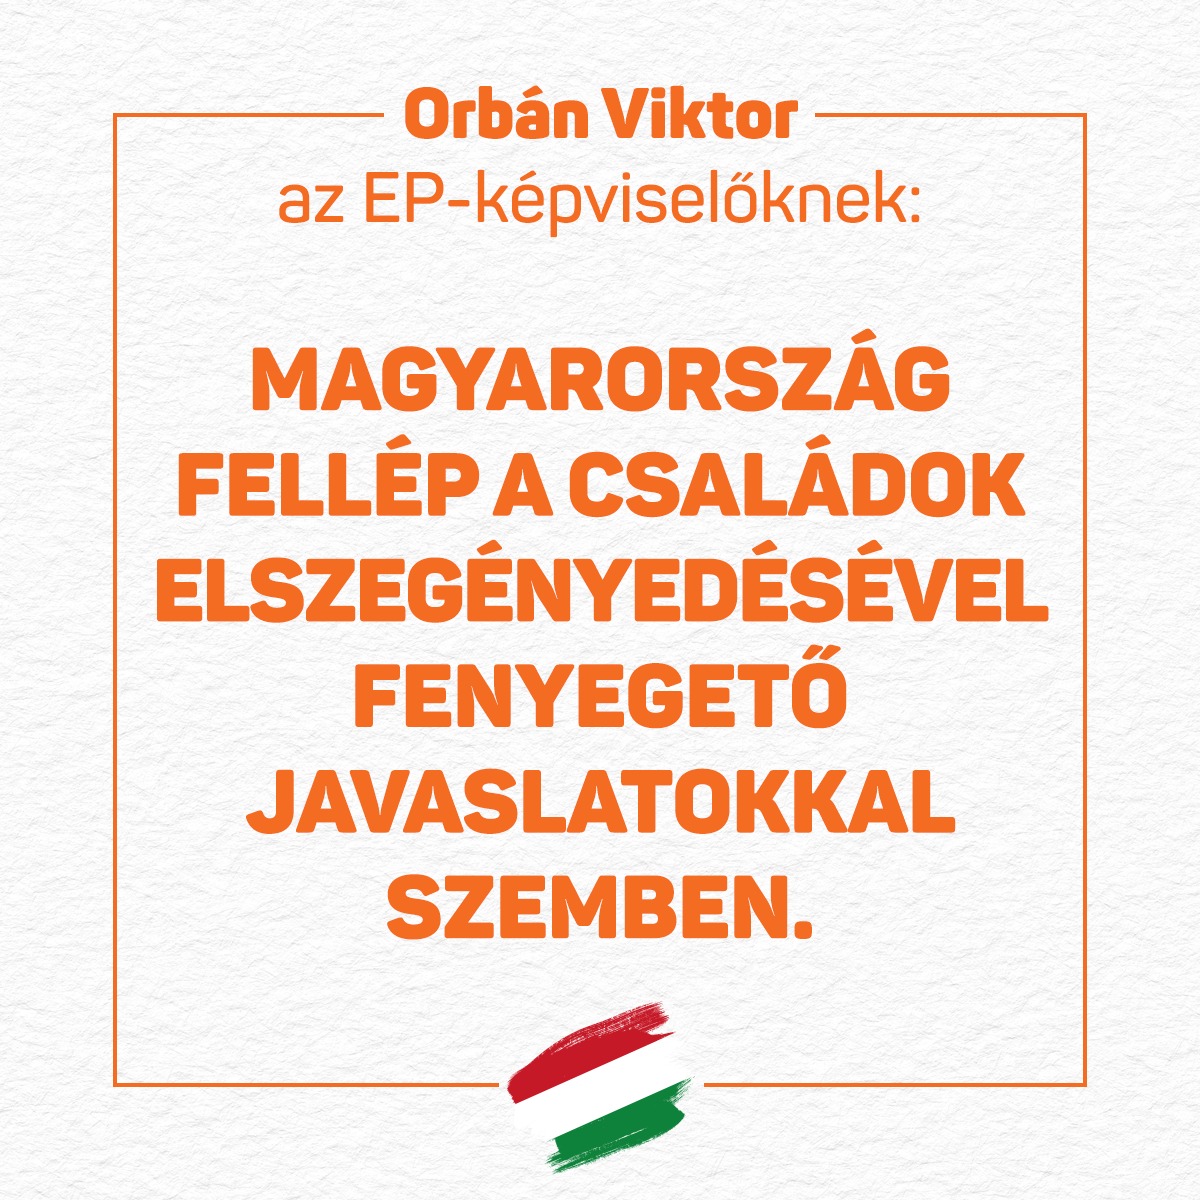 Válaszlevelet írt Orbán Viktor annak a 44 európai parlamenti képviselőnek, akik a napokban közös levelet intéztek hozzá az ukrajnai háború kapcsán. Orbán Viktor válaszában kiállt a béke és Ukrajna megsegítése mellett, ugyanakkor elutasította Magyarország sértegetését, egyházi vezetők kitiltását és a józan ésszel szembemenő szankciós javaslatokat.